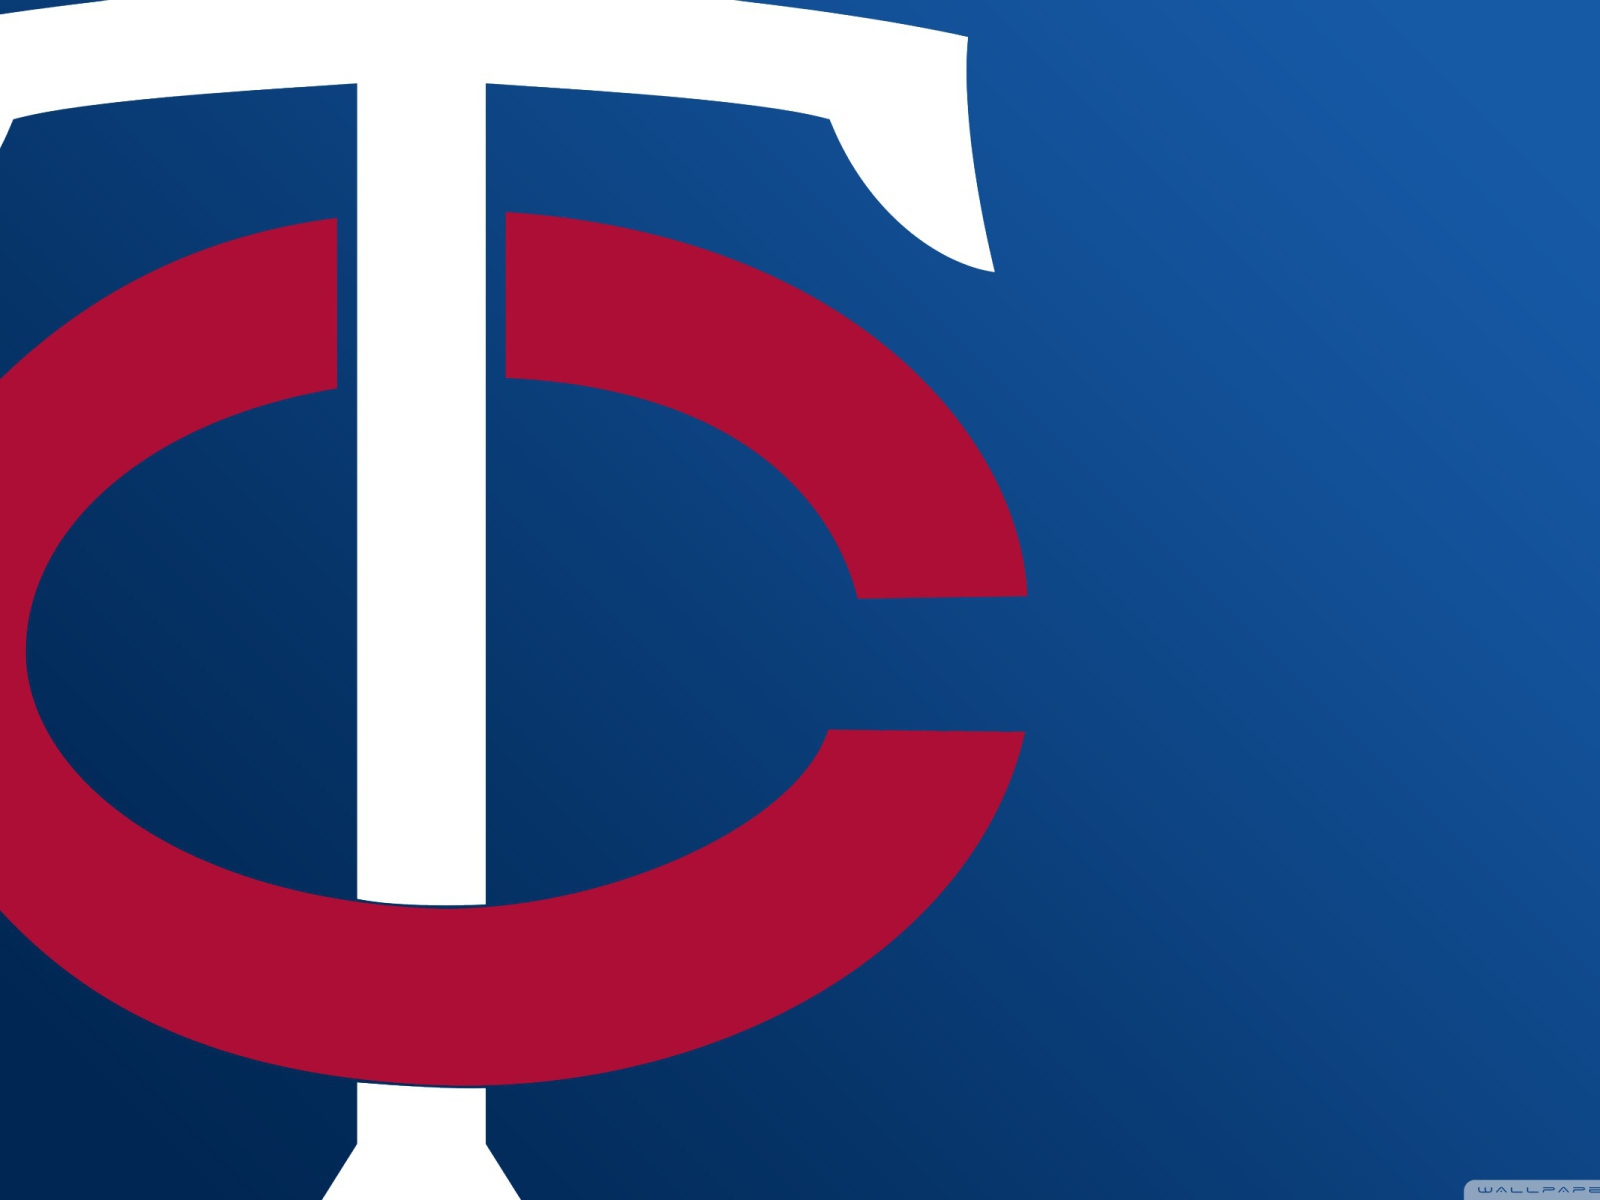 Minnesota Twins baseball team league baseball logo